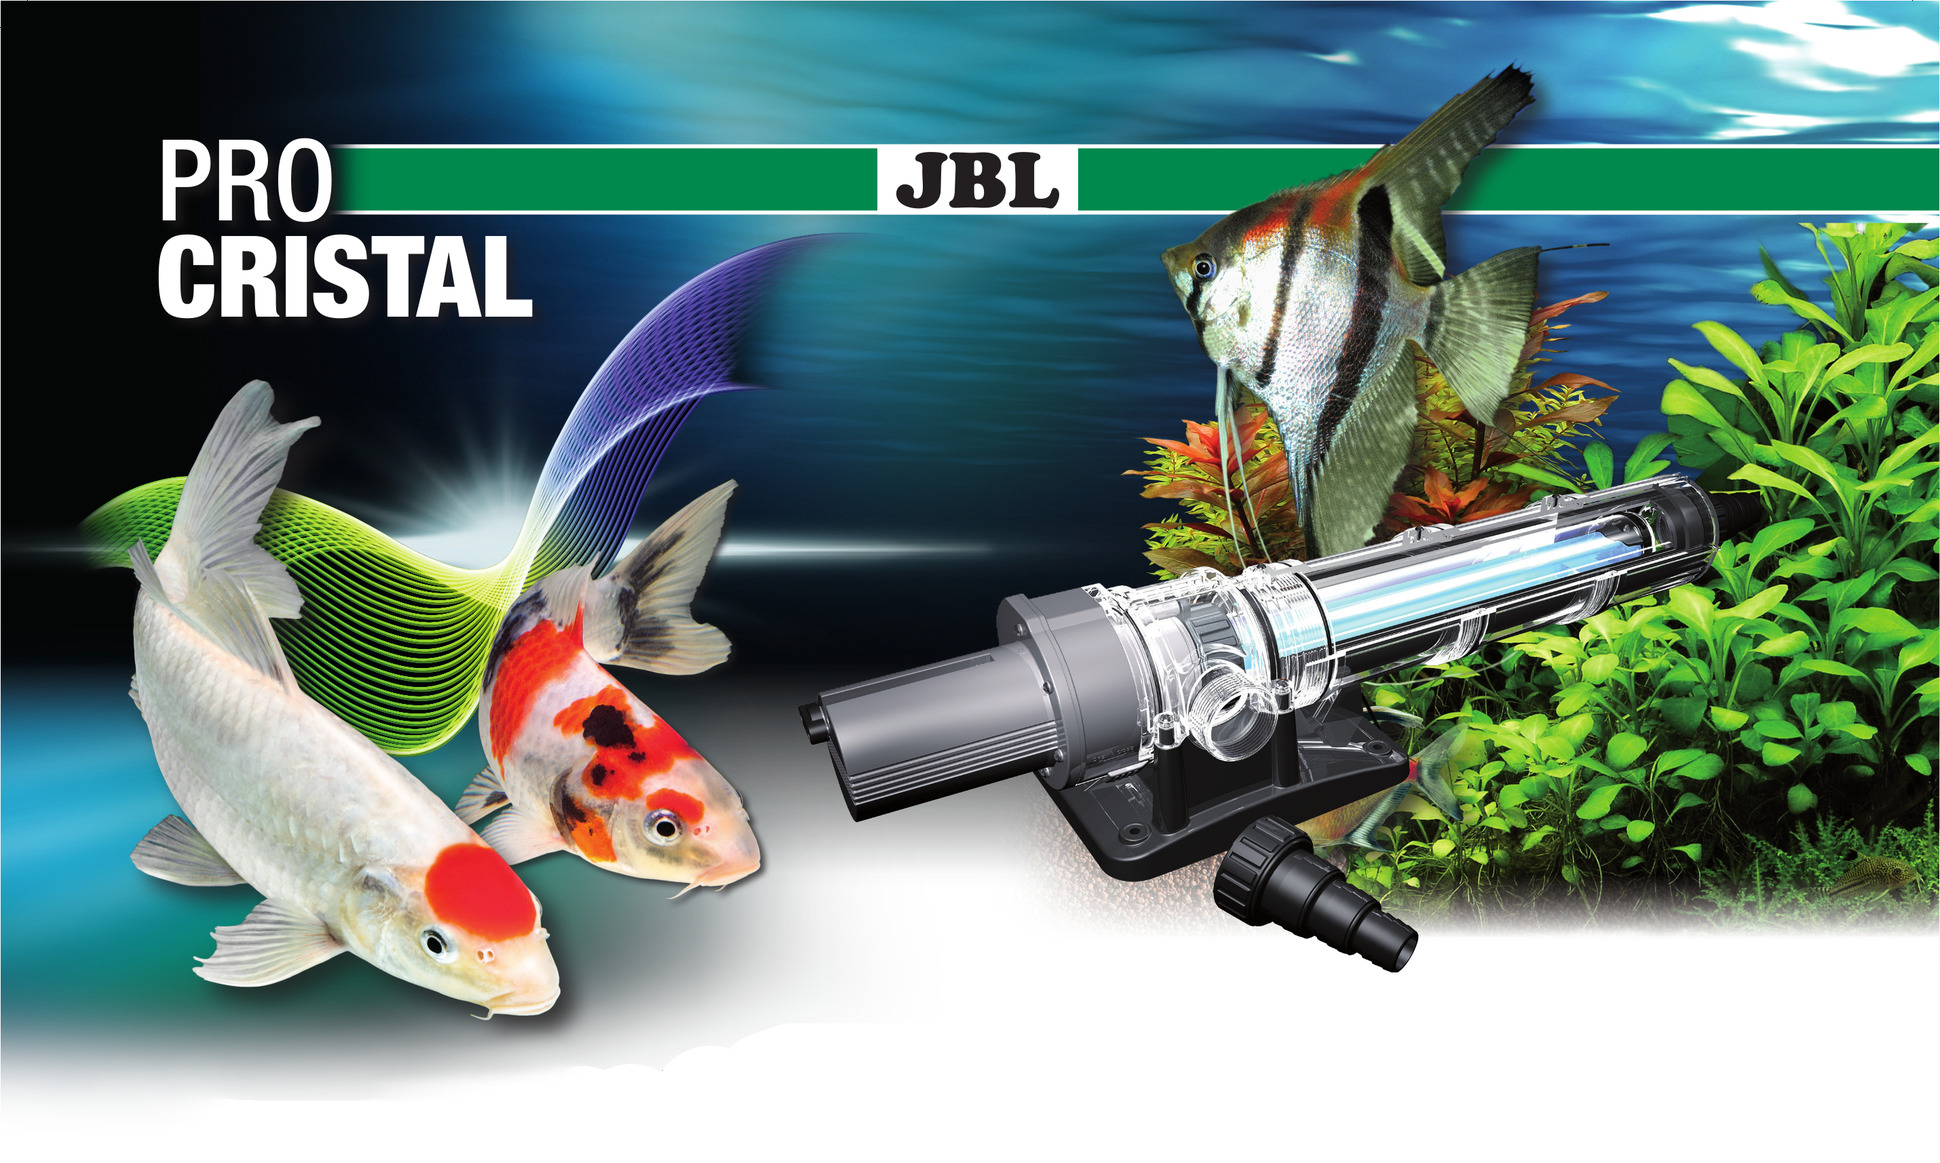 Interzoo 2016 – Need clarification? JBL ProCristal will help